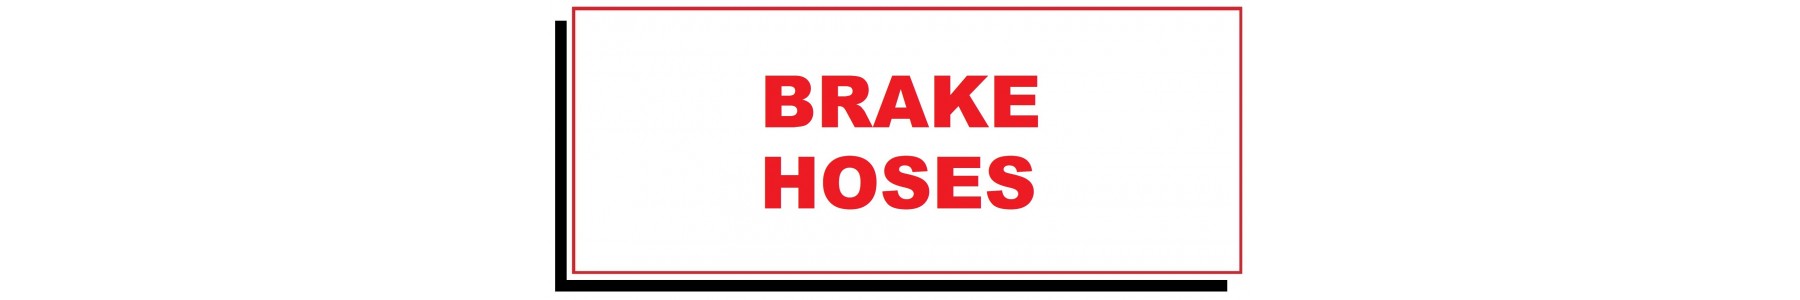 BRAKE HOSES